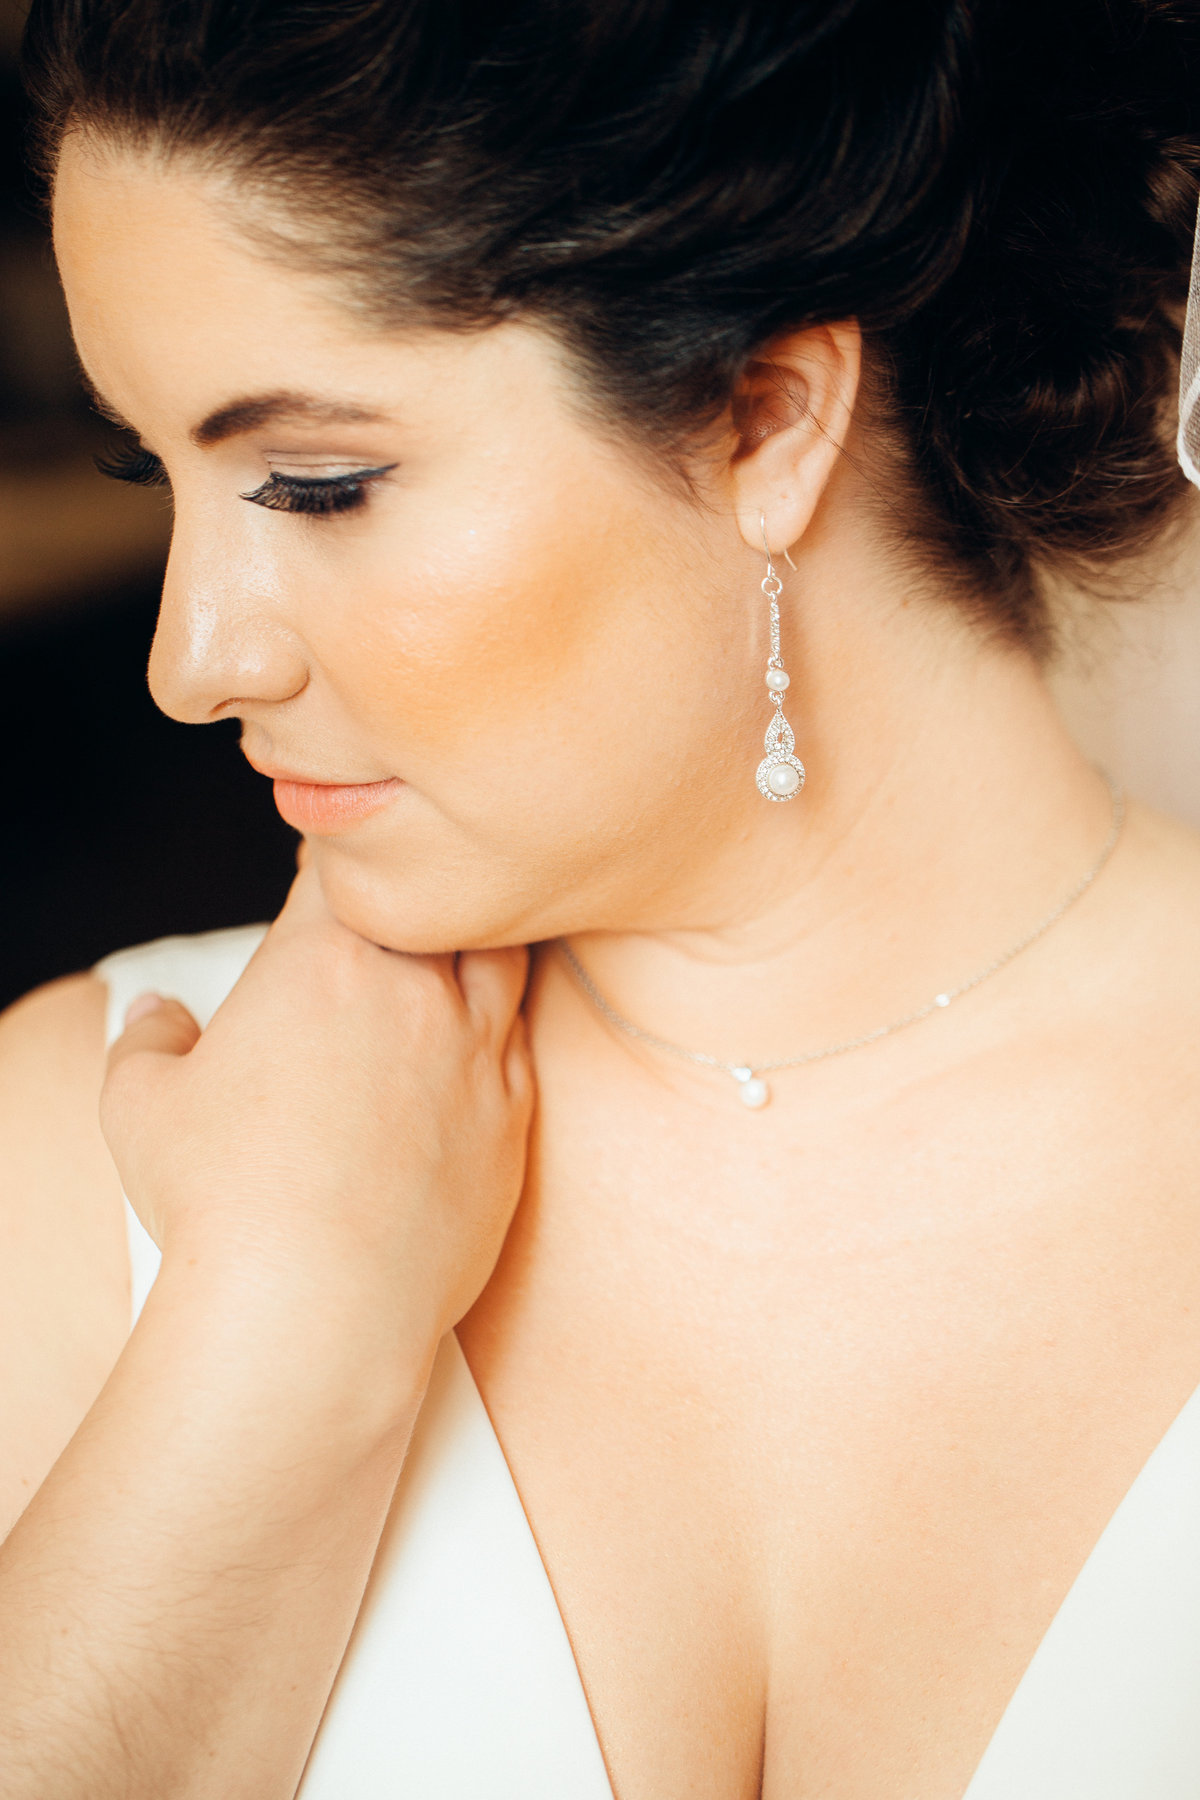 Bride With Earrings Wedding Photo